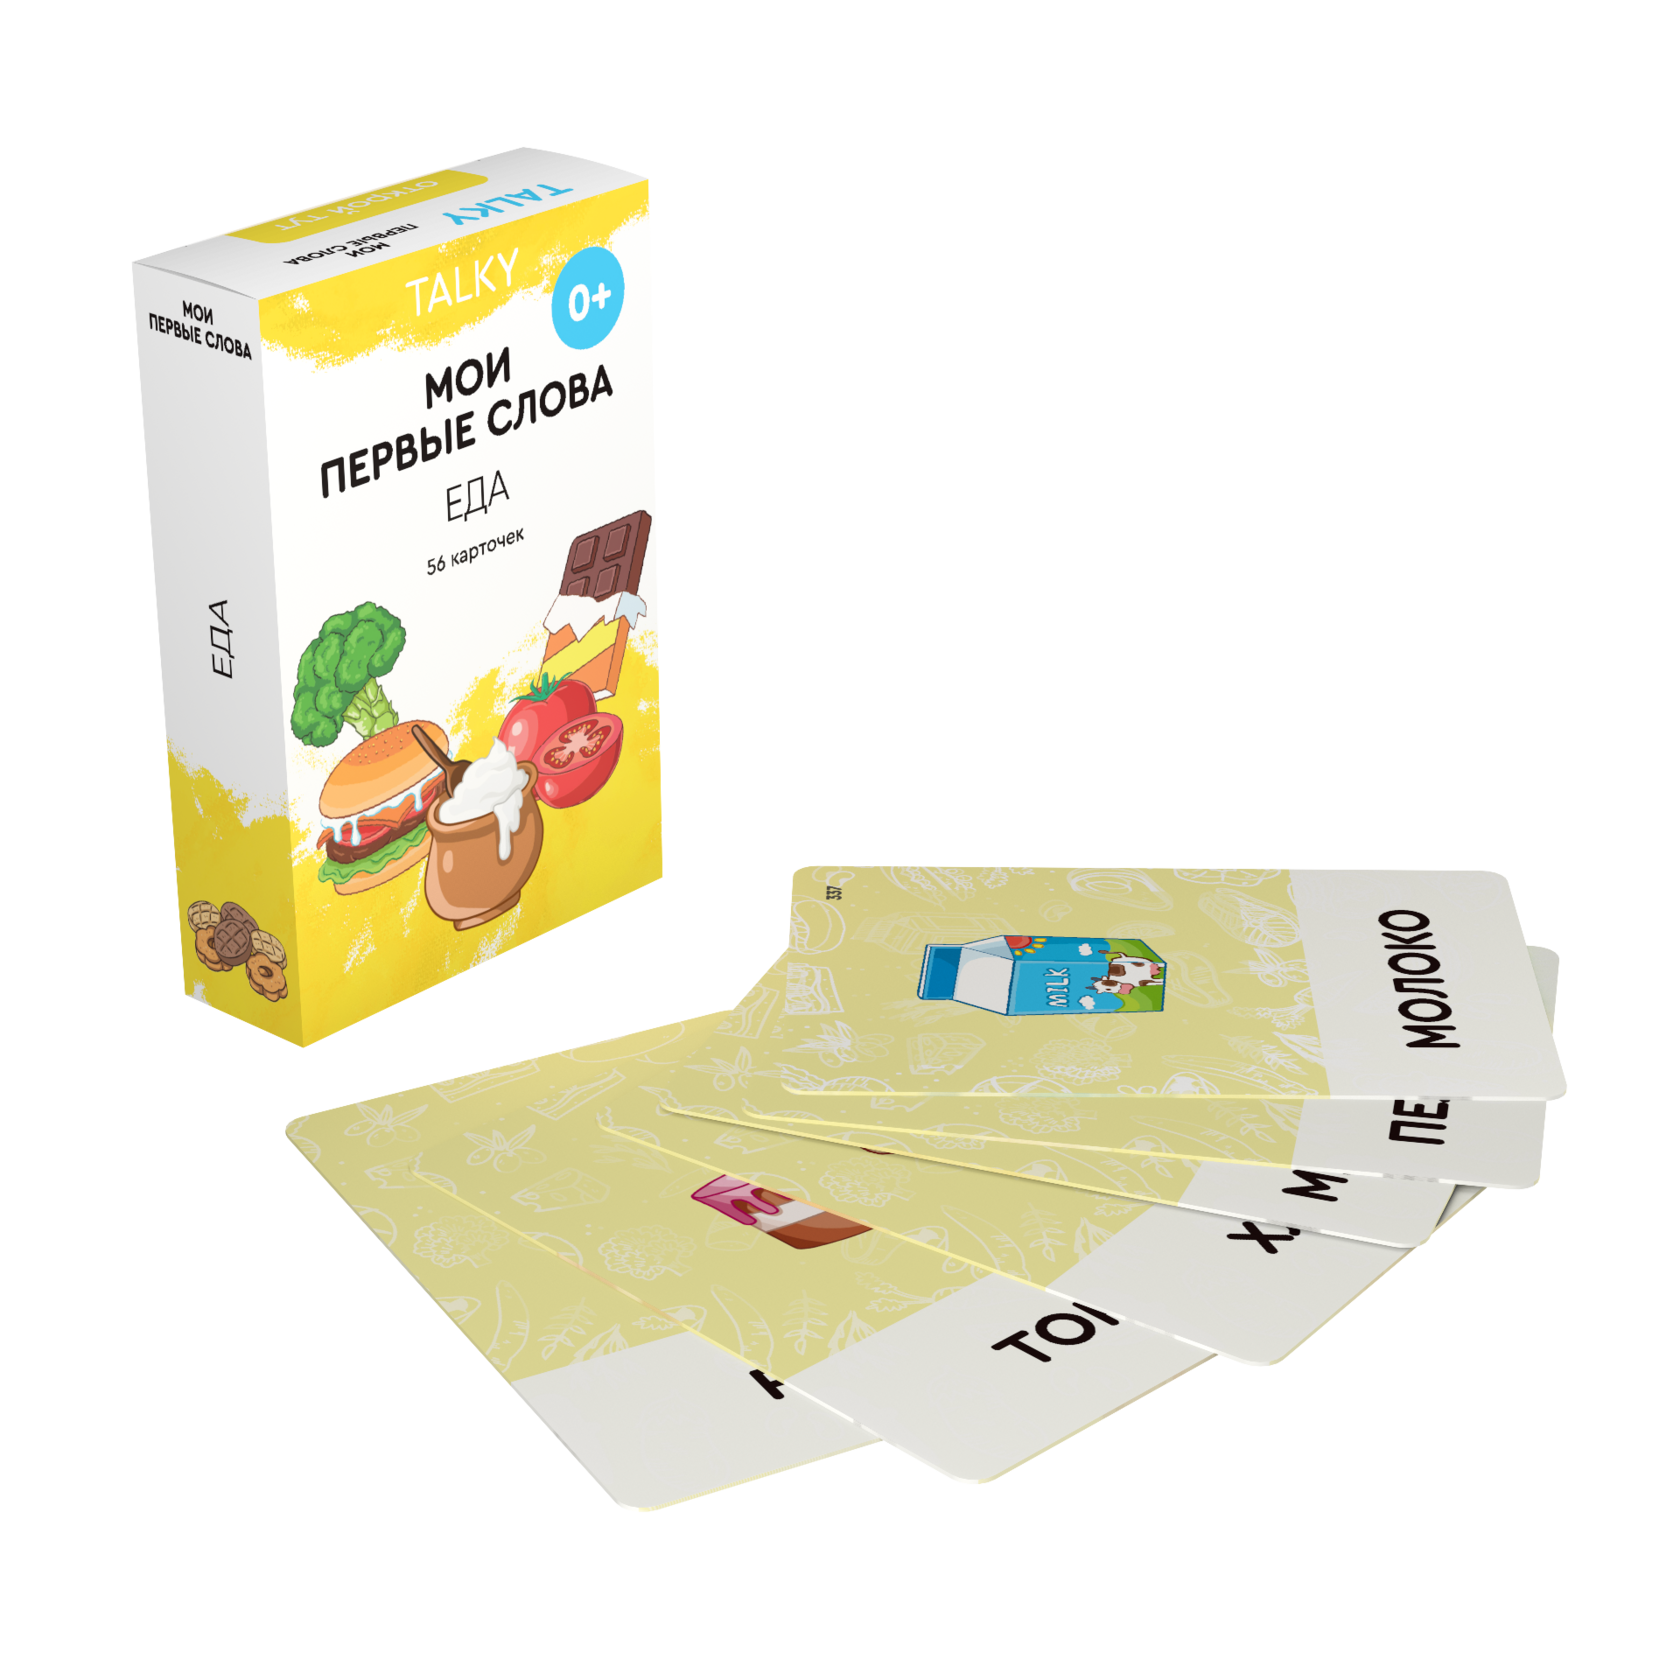 Развивающие карточки для детей LUMICUBE для TALKY, еда, 56шт. KDTKR02-FOOD развивающие карточки для детей lumicube для talky 56шт kdtke01 family